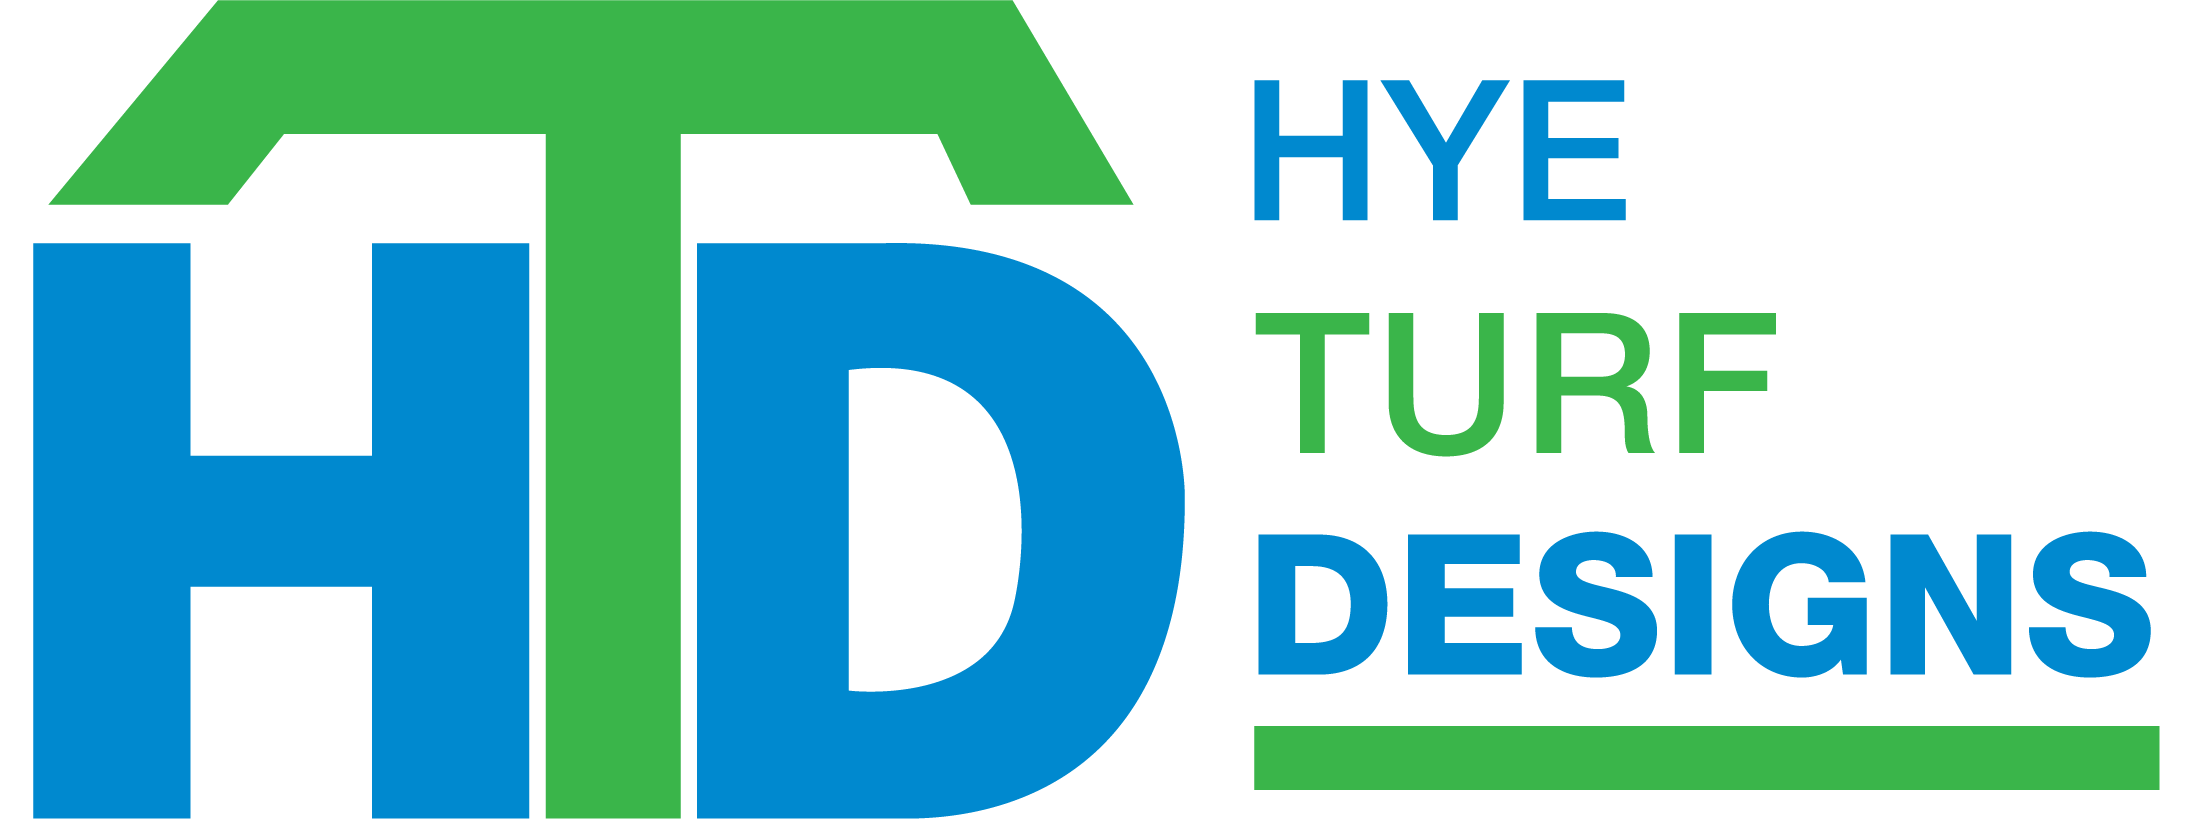 Hye Turf Designs Logo